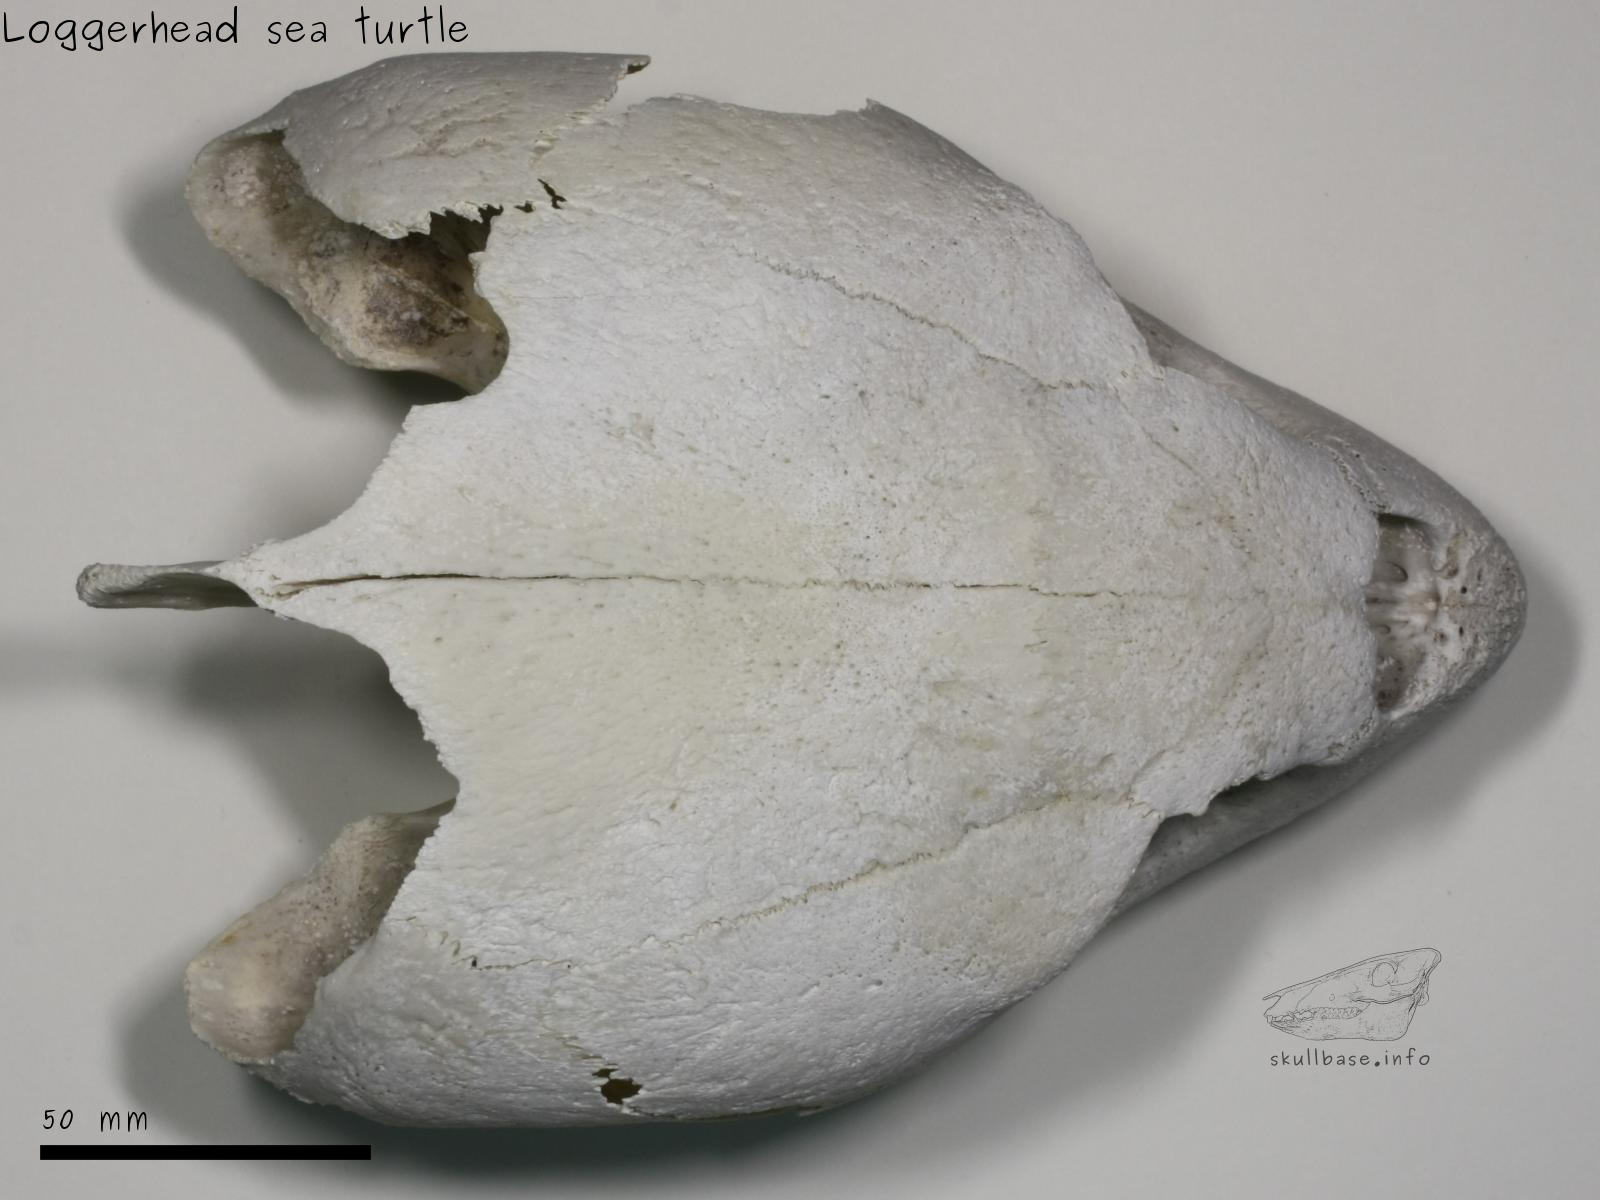 Loggerhead sea turtle (Caretta caretta) skull dorsal view